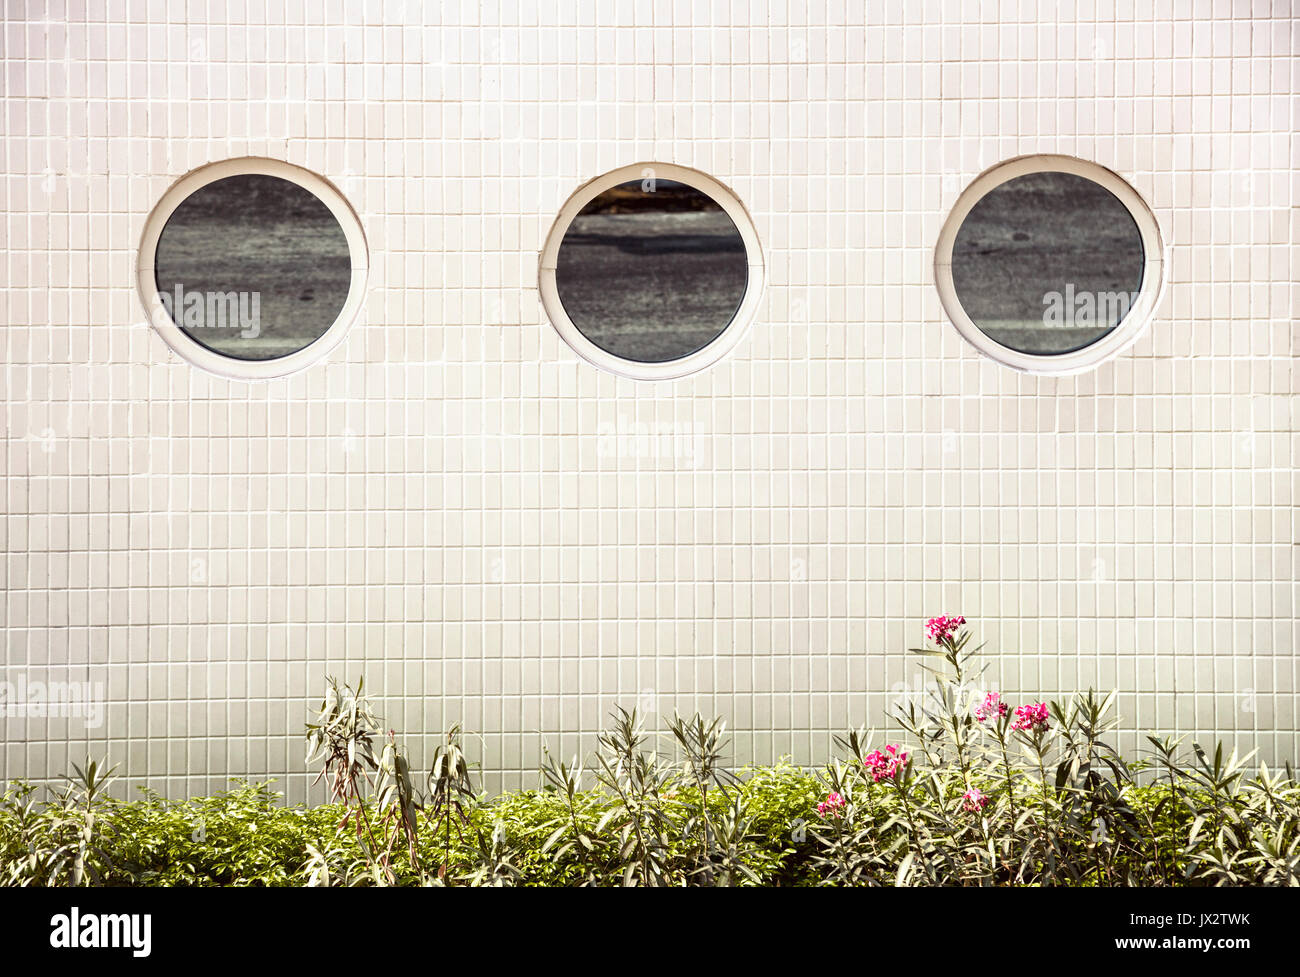 Espejo redondo de 3 ventanas en una fila en la pared del edificio de baldosas blancas y fondo verde hierba y flores debajo Foto de stock